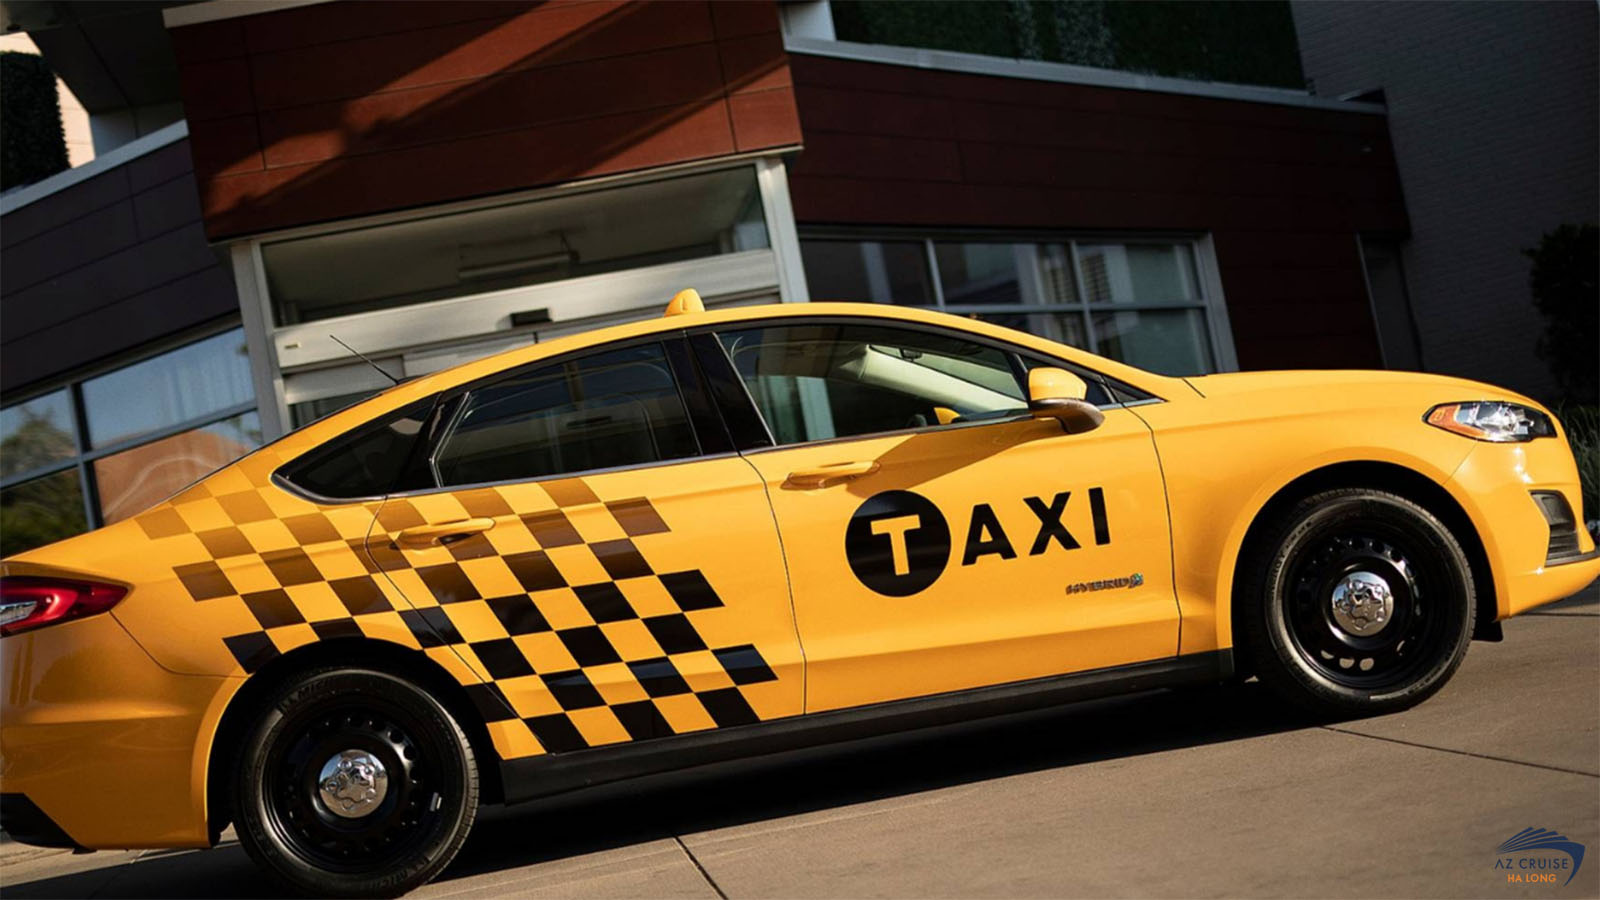 Taxi Bãi Cháy được đầu tư với các dòng xe đời mới từ các hãng xe phổ biến là Kia, Toyota, Hyundai,...